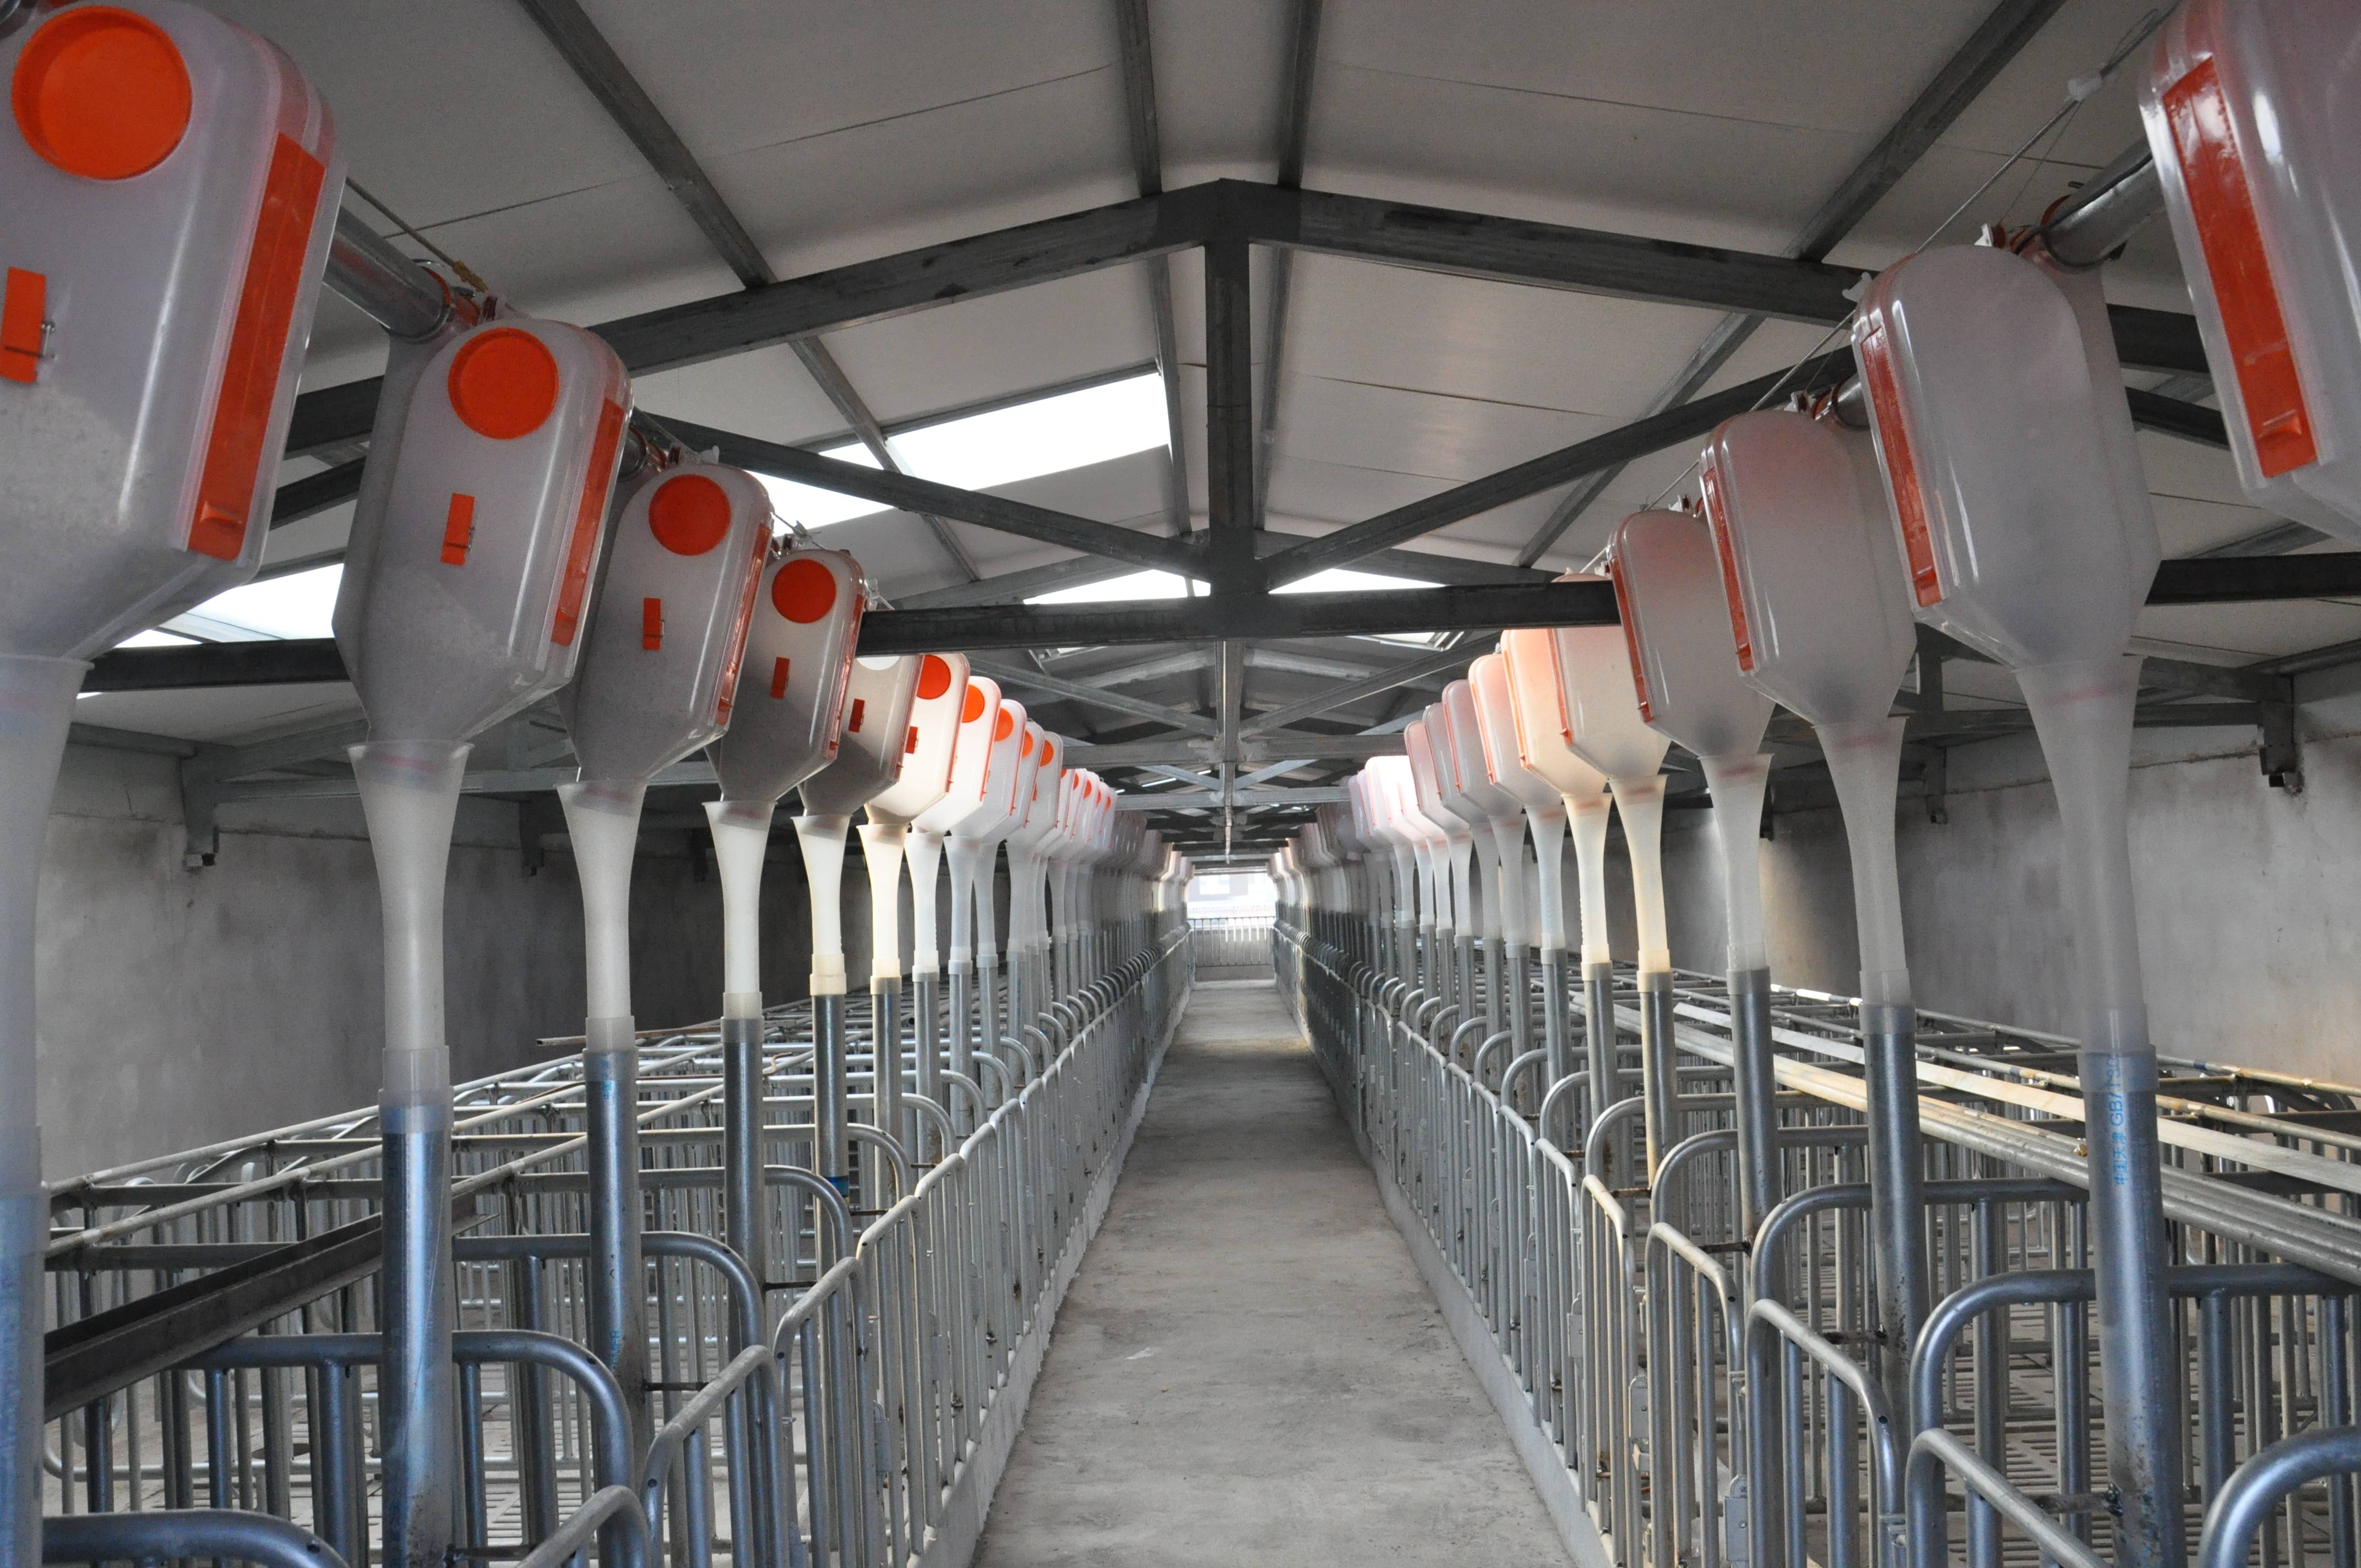 南商农科,高端自动化养猪设备缔造者,承接大,中型养猪场的规划设计及